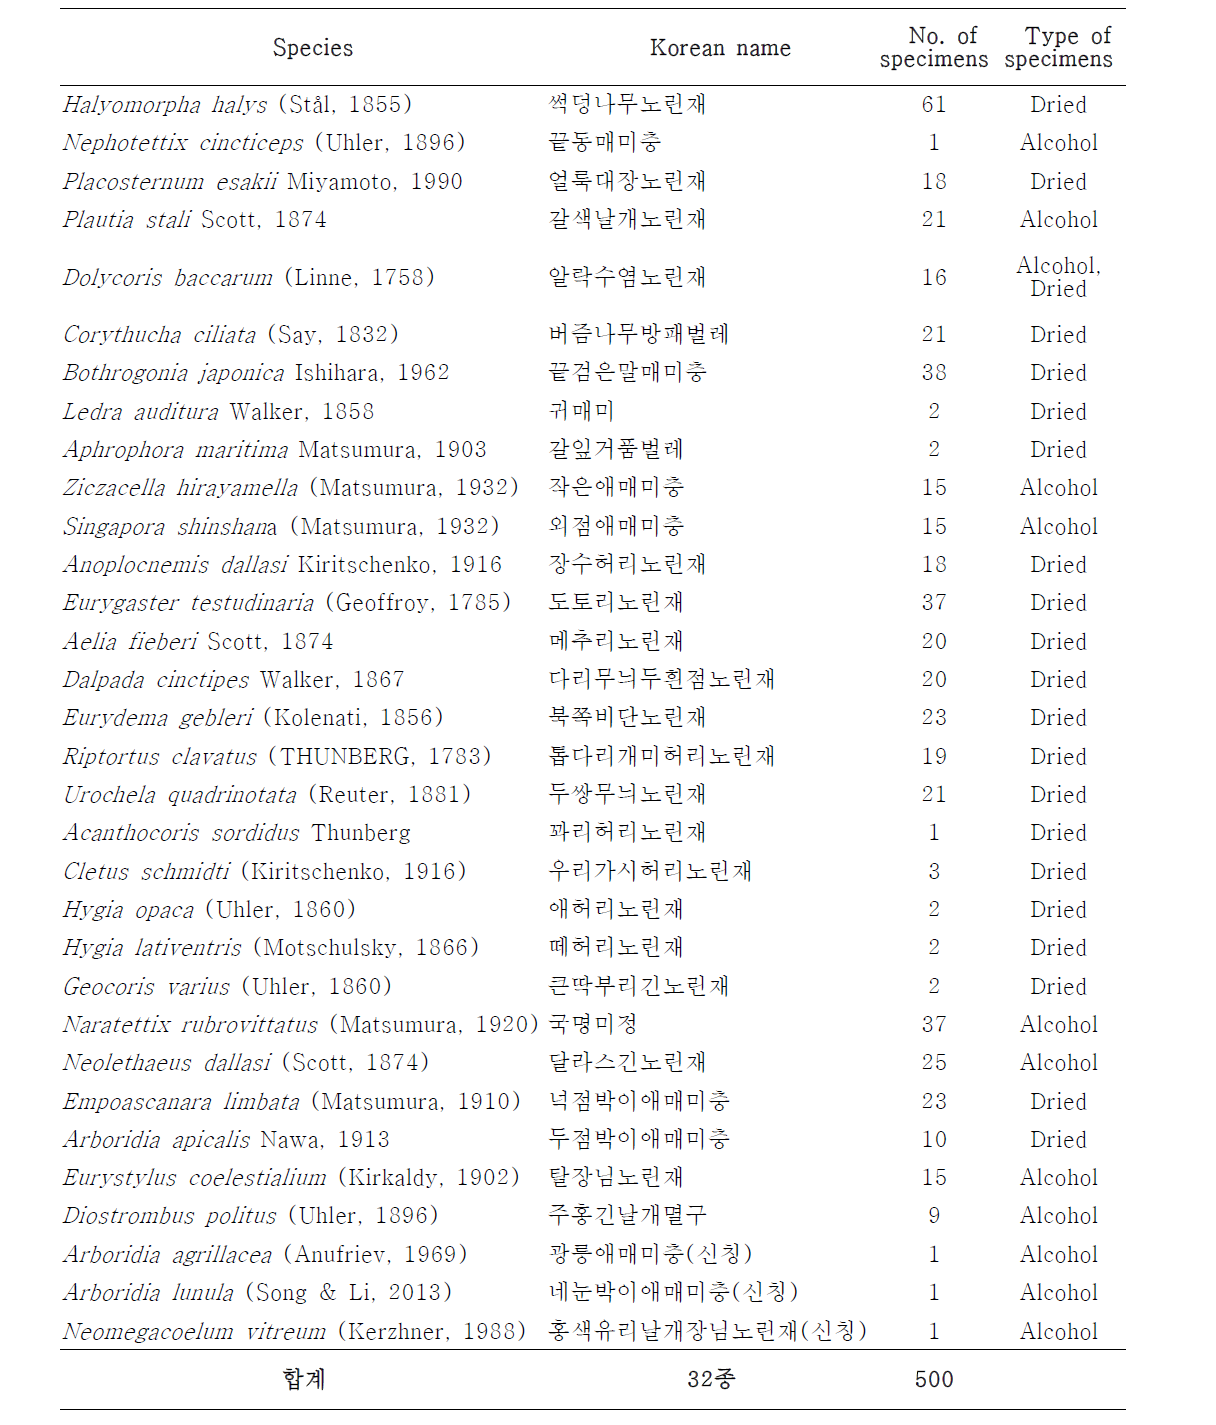 Collected Heteroptera in Korea, 2014